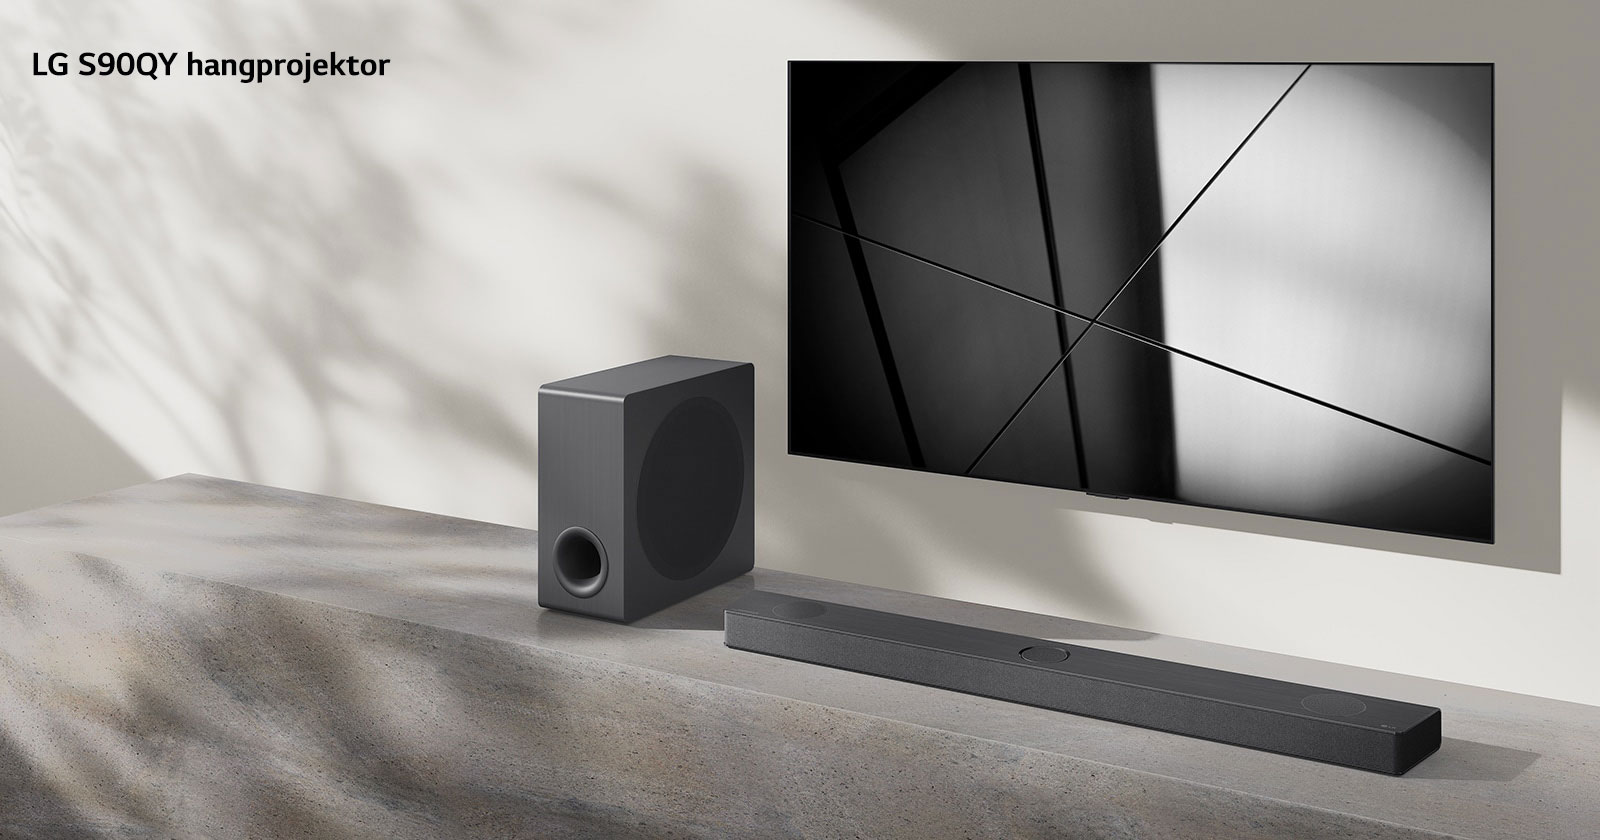 Egy LG S90QY hangprojektor és egy LG TV együtt egy nappaliban. A TV be van kapcsolva, és egy fekete-fehér kép látható rajta.